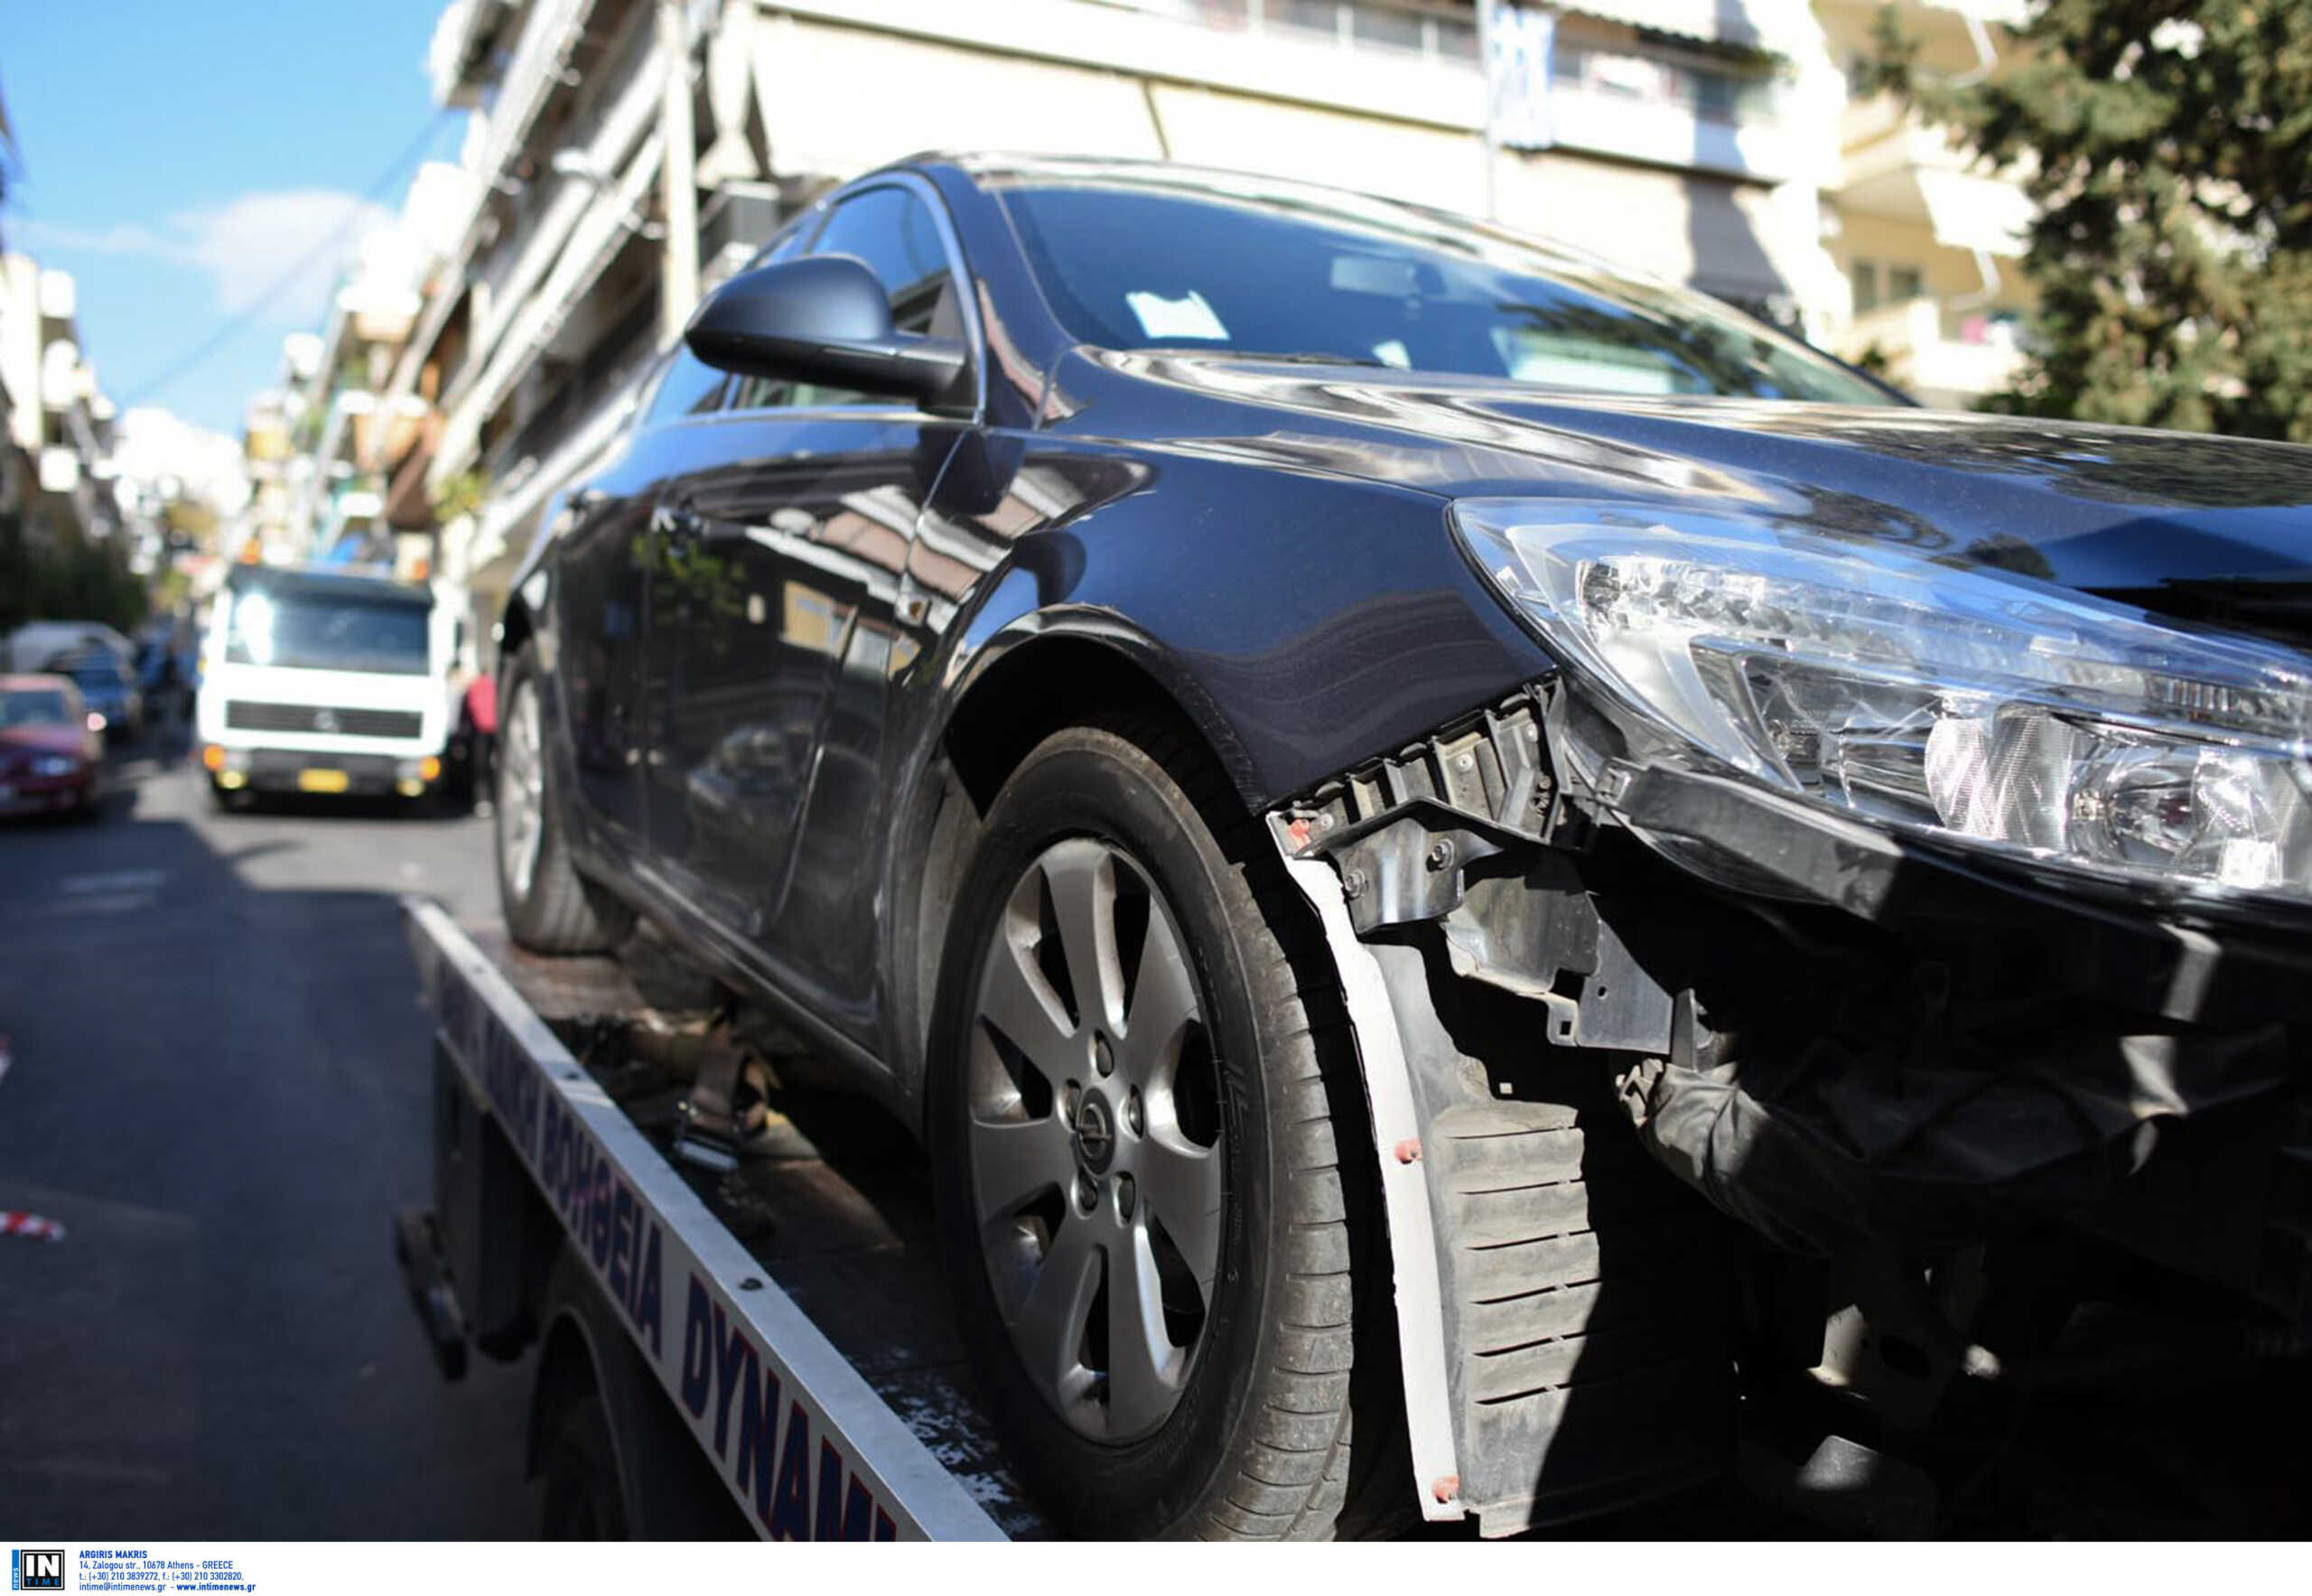 Το τρακάρισμα με παρκαρισμένο όχημα, το πιο συνηθισμένο ατύχημα μέσα στην πόλη